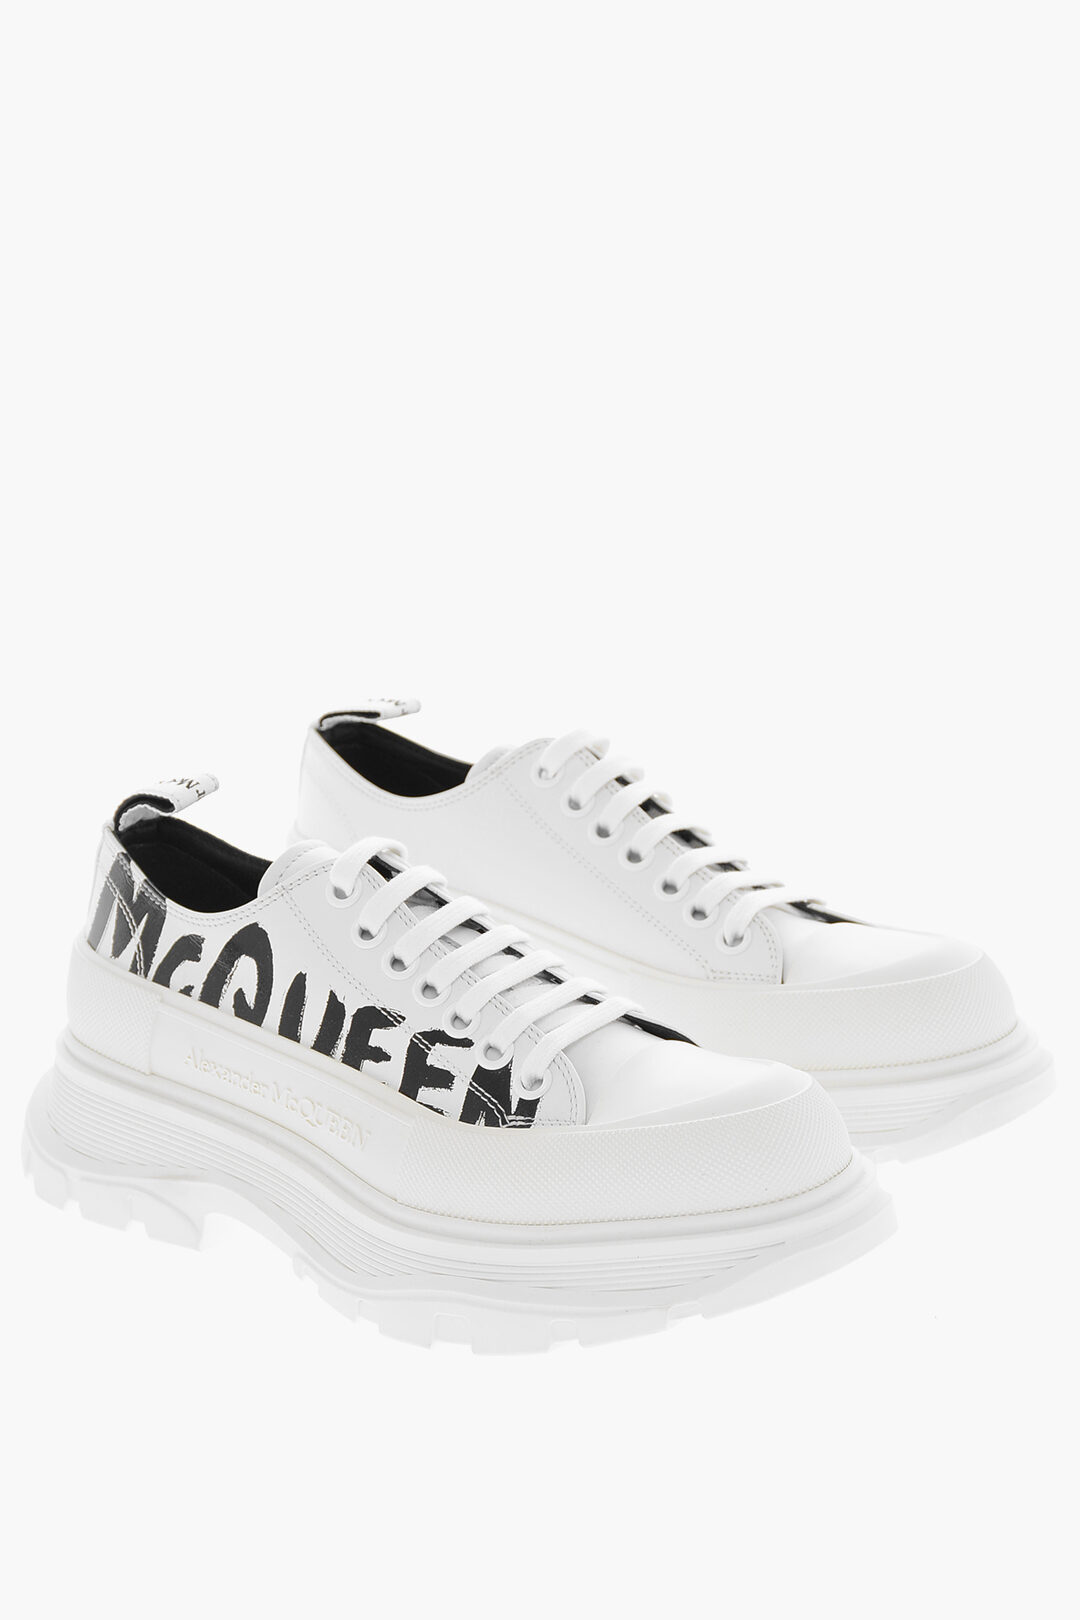 Alexander McQueen Pastel Pink & Black Monogram Joey Sneakers - Footwear  from Brother2Brother UK